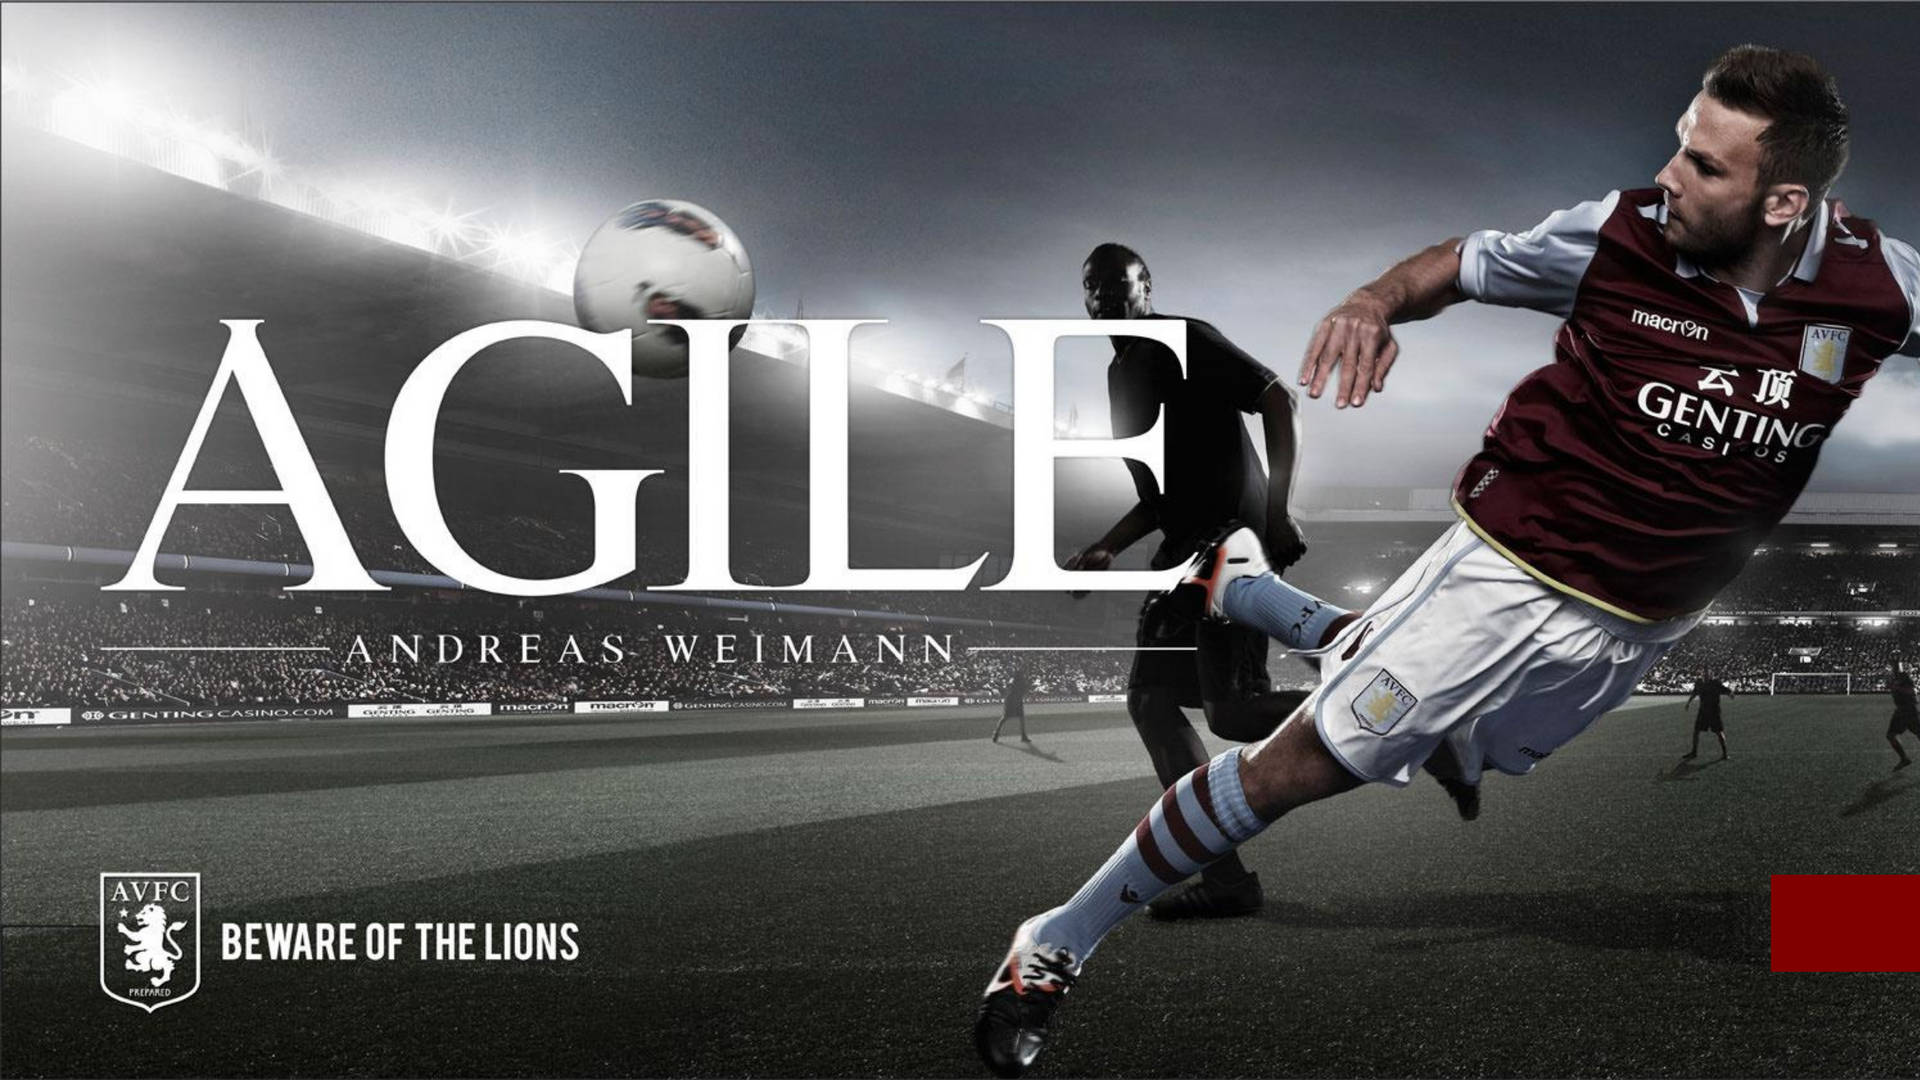 Aston Villa Andreas Weimann Poster Background